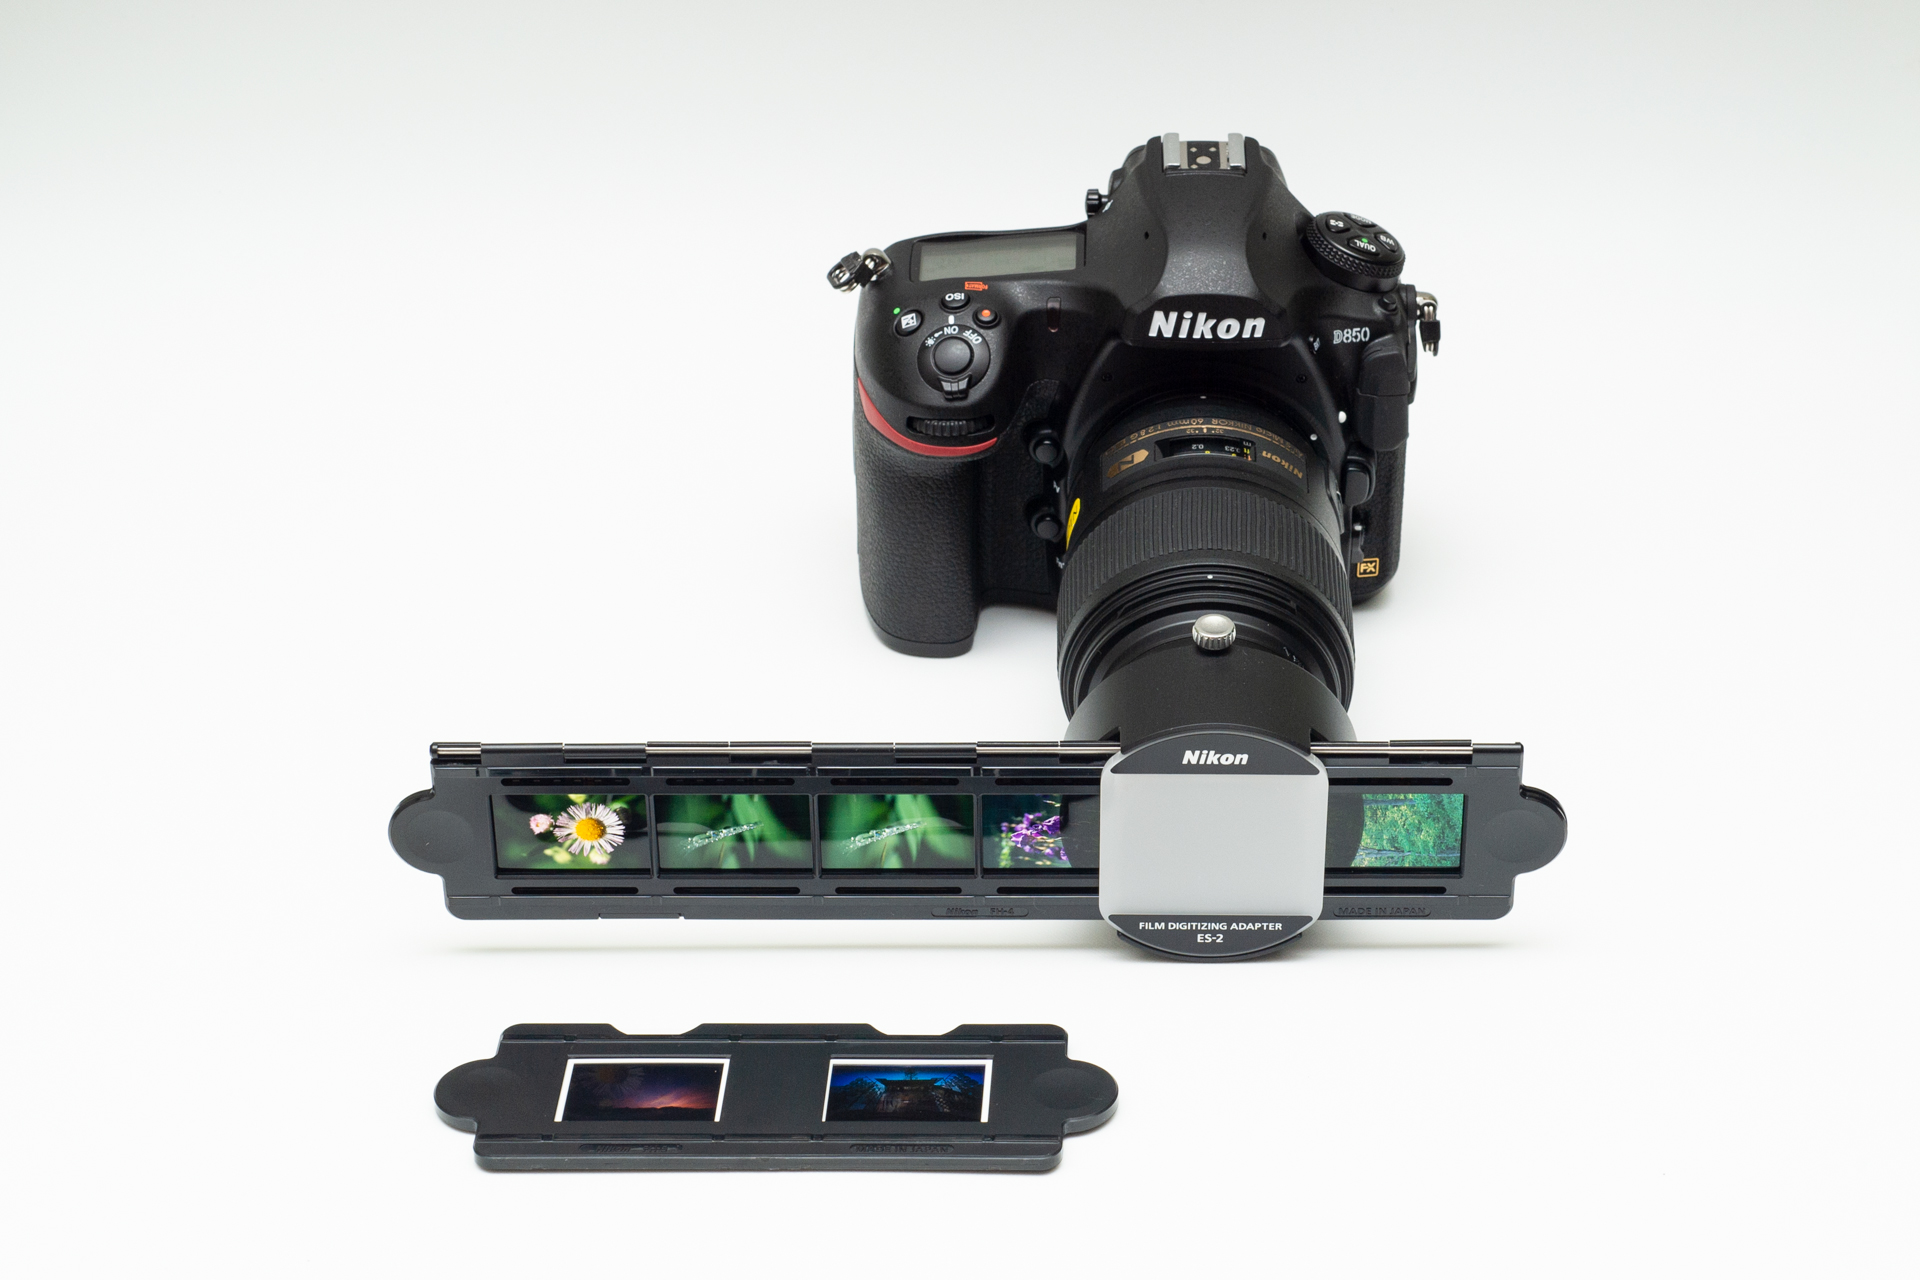 Nikon フィルムデジタイズアダプター ES-2